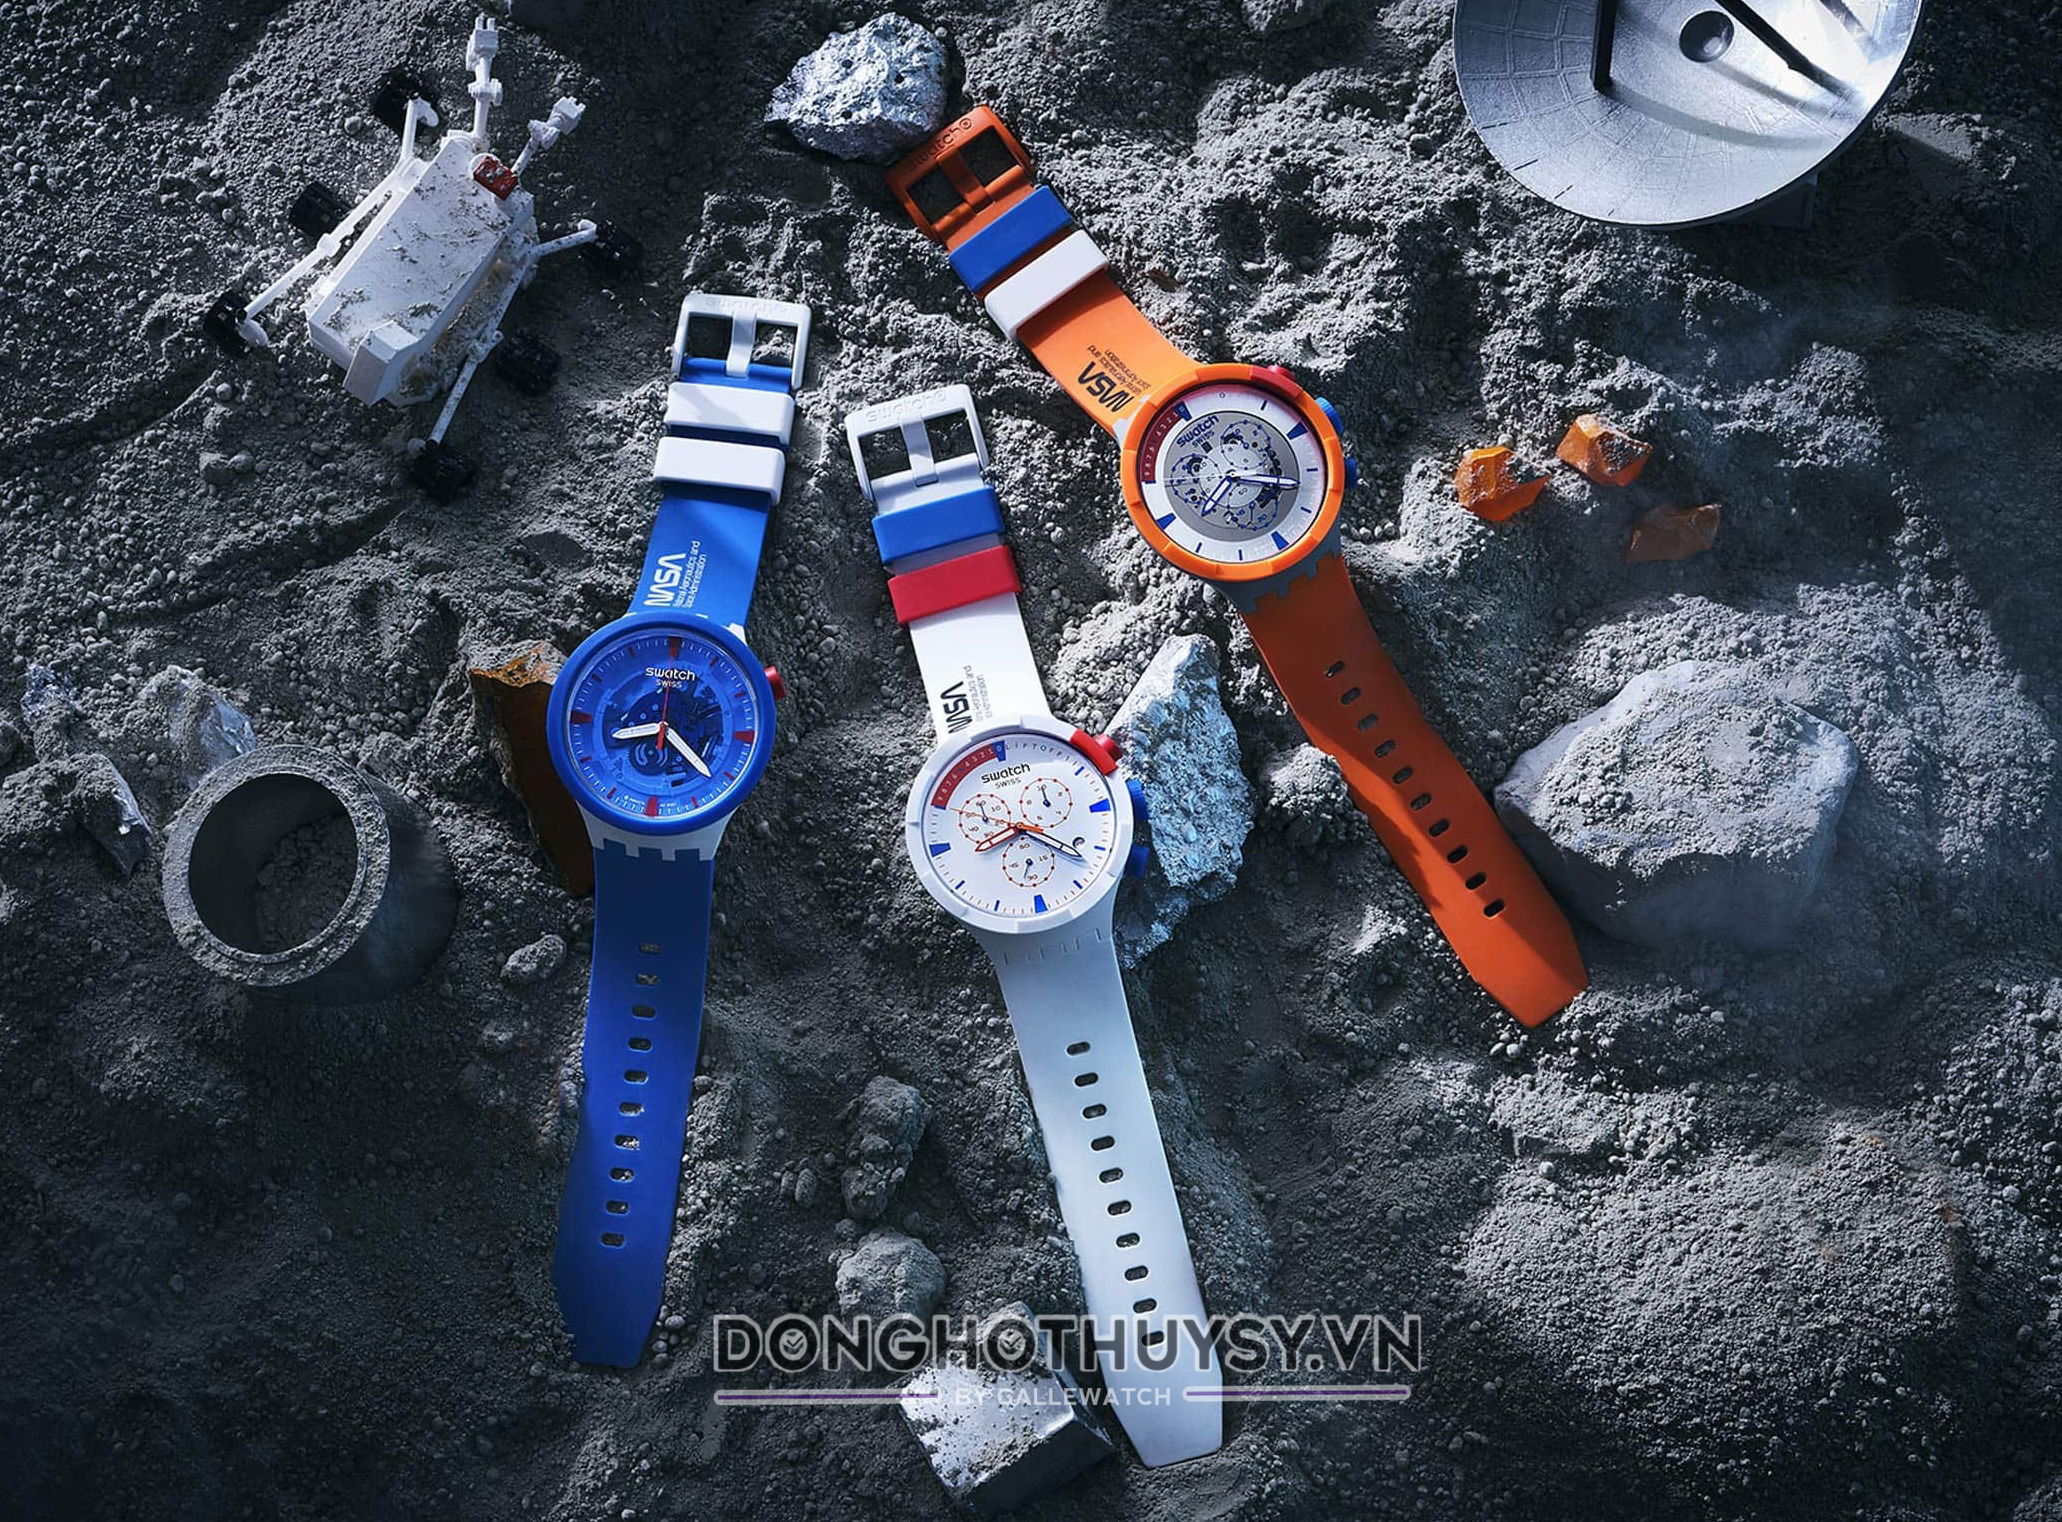 Swatch hiện sở hữu nhiều thương hiệu đồng hồ với nhiều phân khúc khác nhau